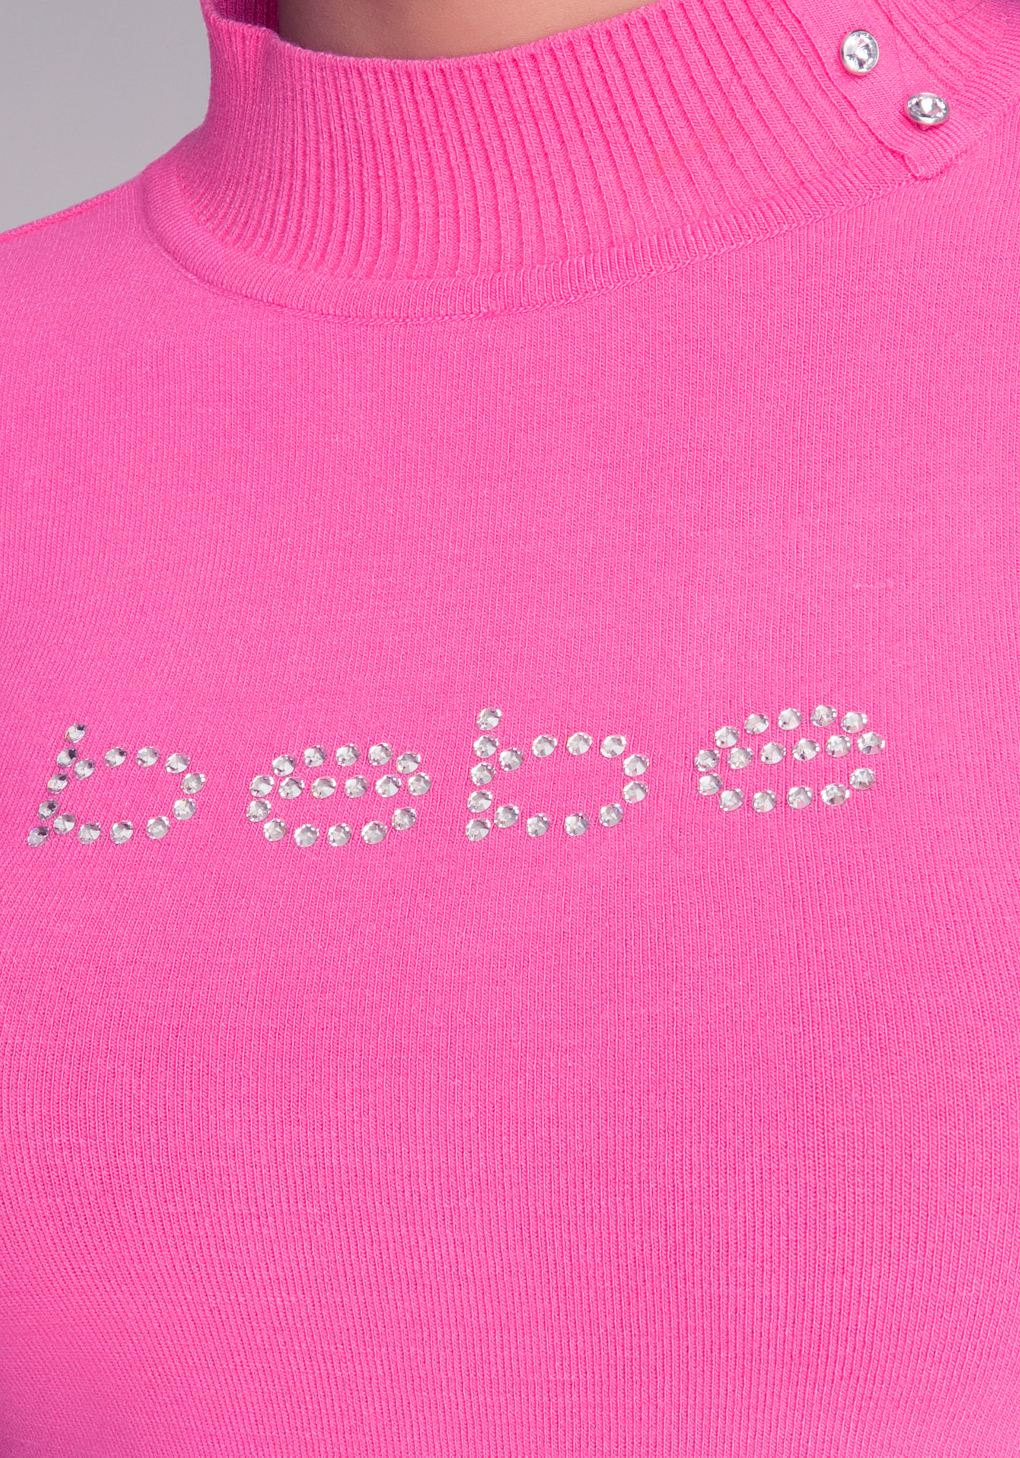 Bebe Mock Neck Keyhole Sweater in Pink - Lyst